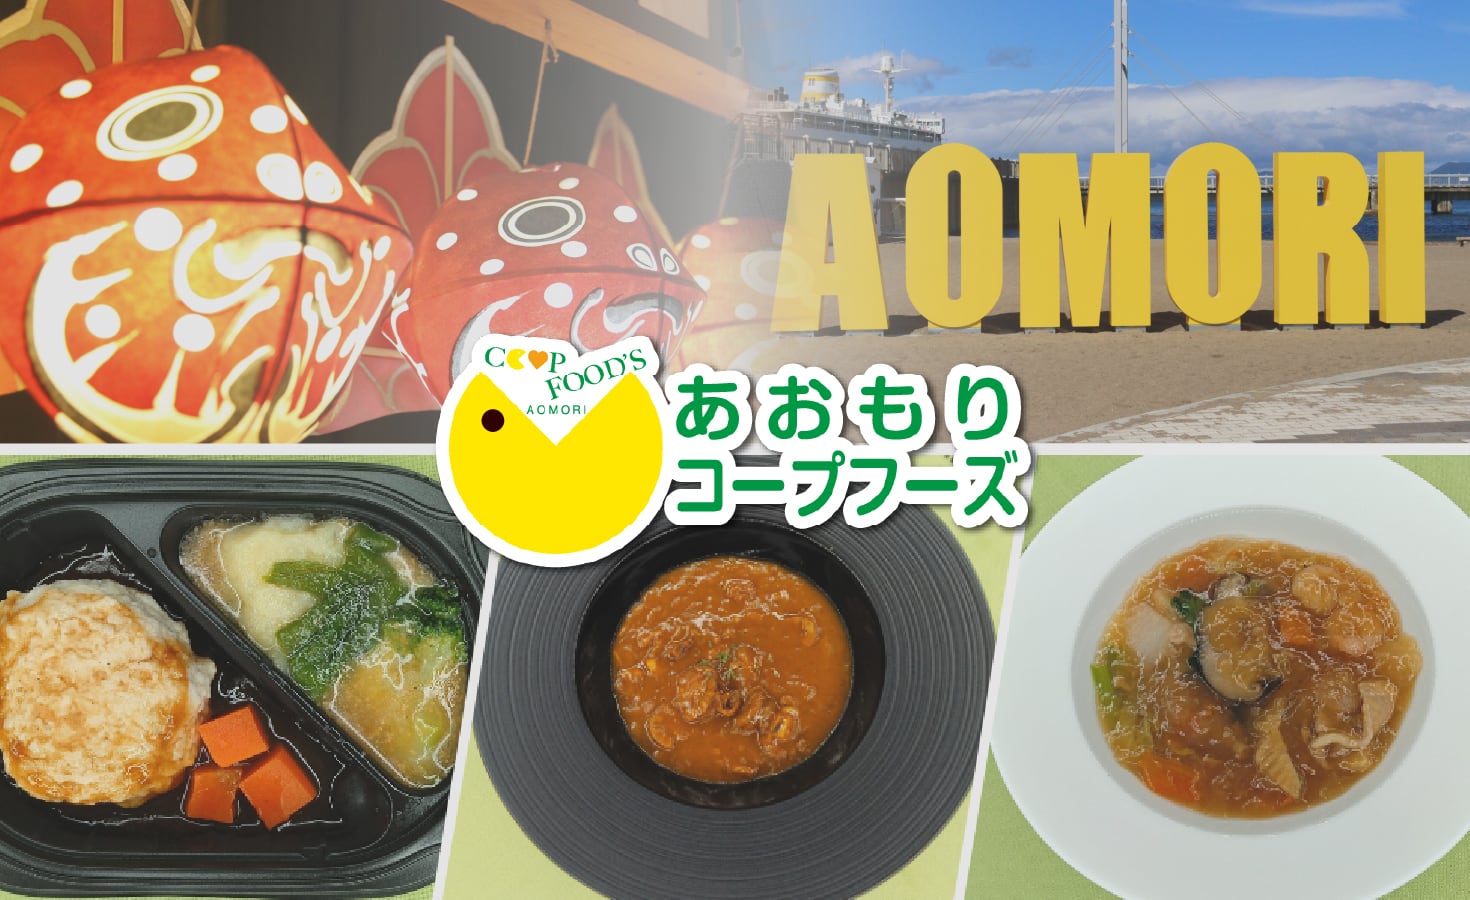 Aomori Coop Foods